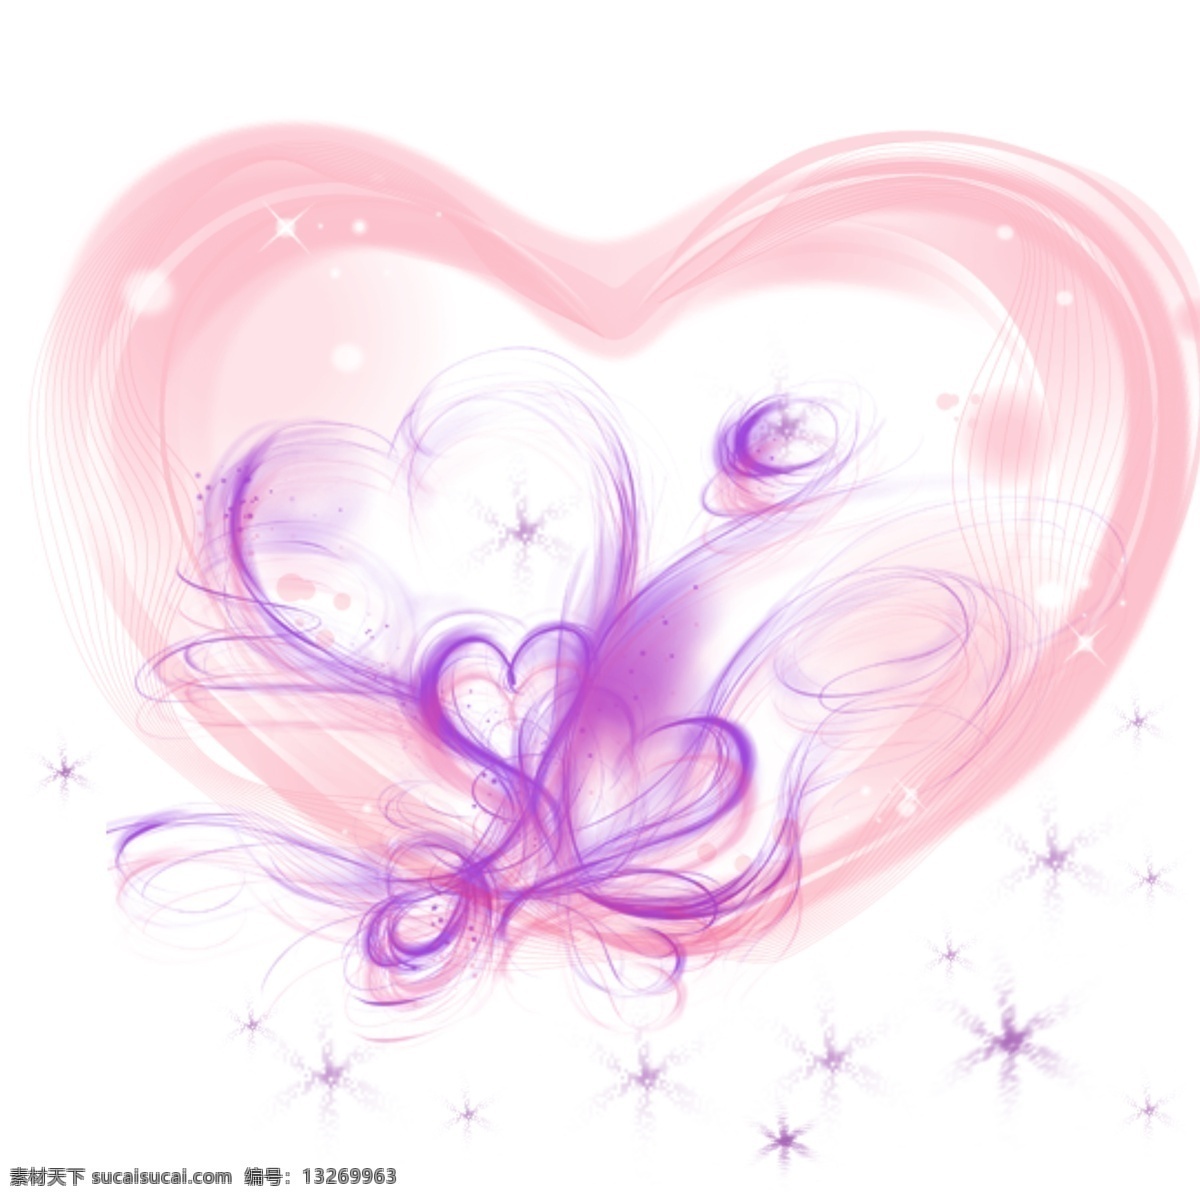 浪漫 心形 主题 浪漫心形设计 灿烂星光设计 浪漫手绘设计 创意心形设计 紫色心形设计 粉红色